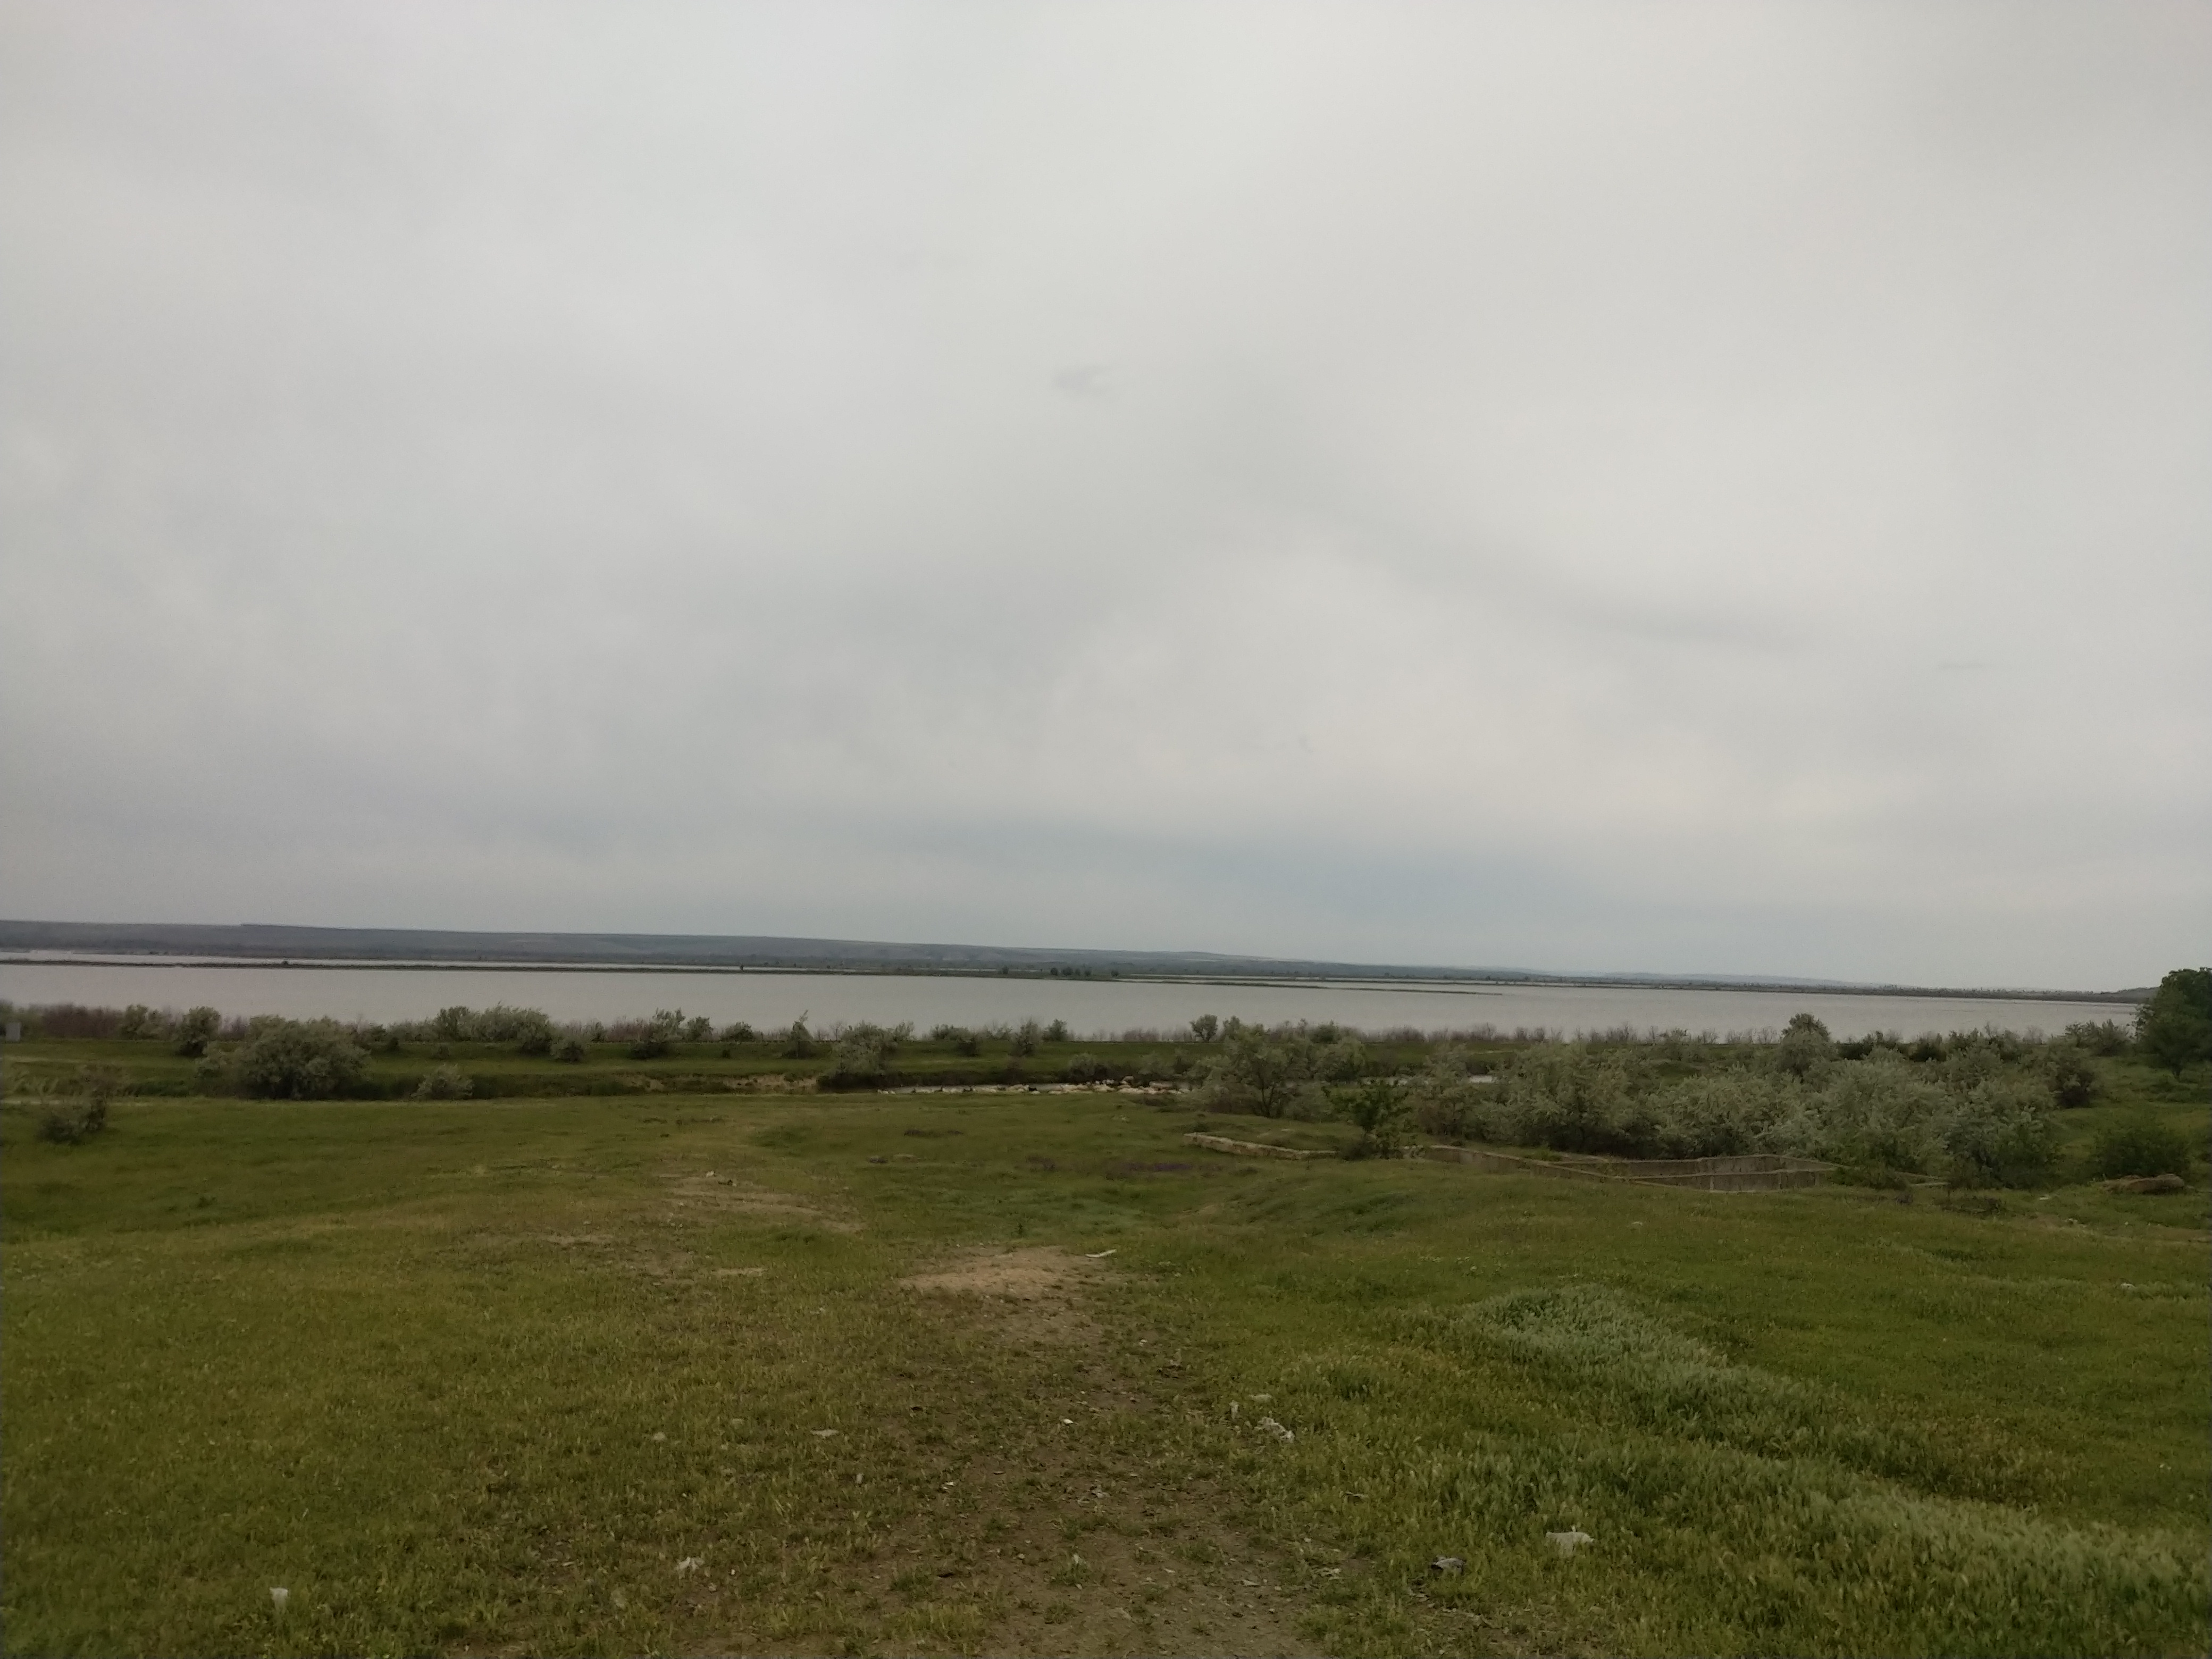 MD, Район Cahul, Satul Crihana Veche, Lacurile de la Crihana - Veche